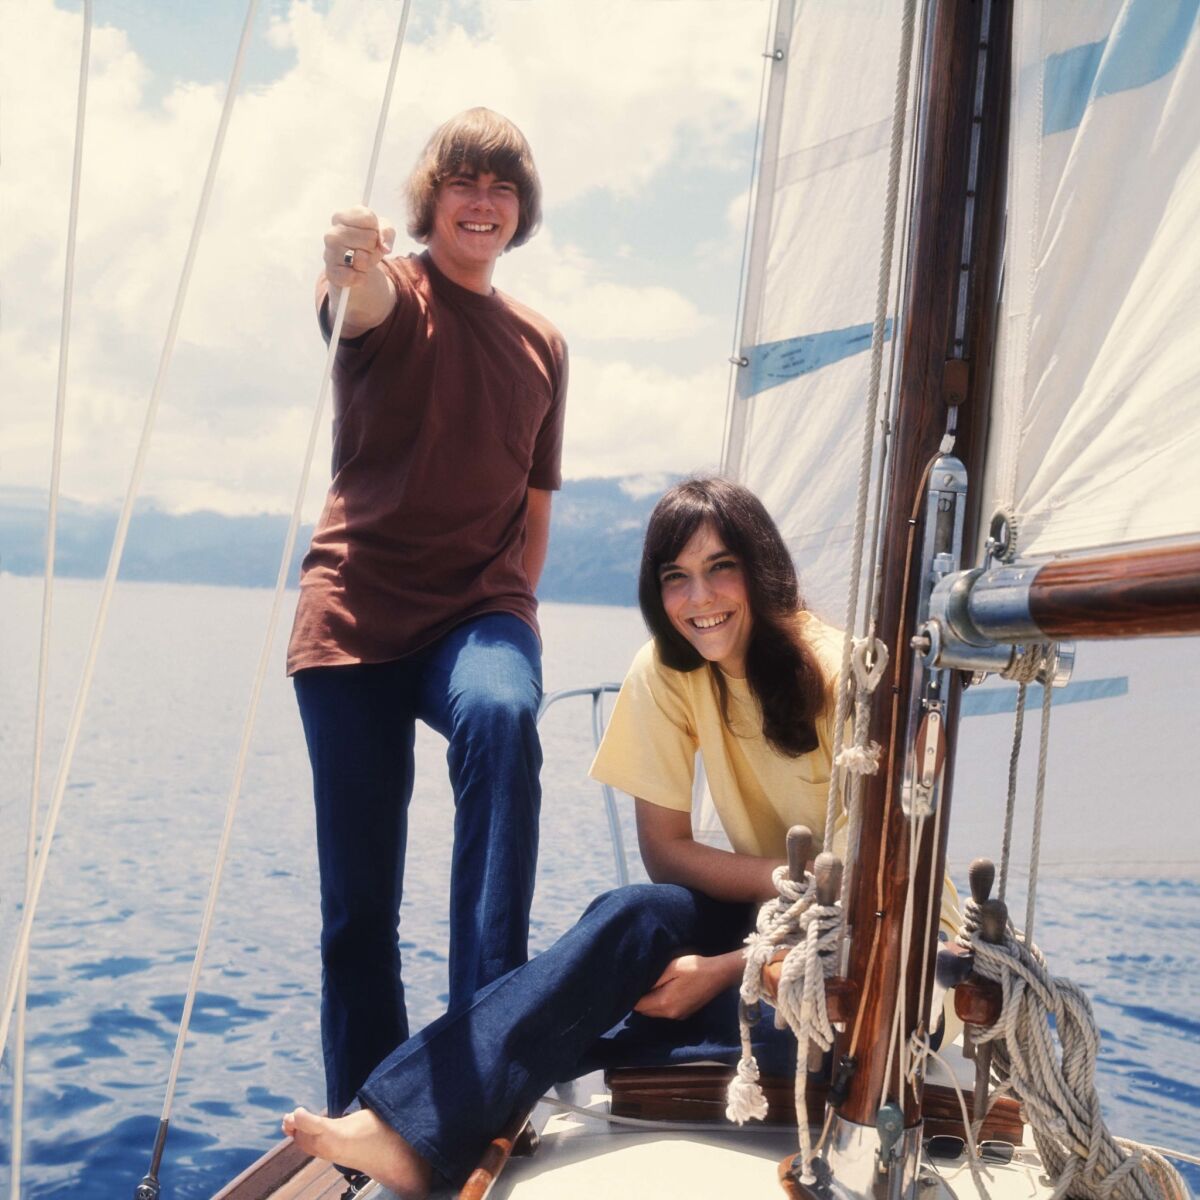 Richard and Karen Carpenter on a sailboat in Lake Tahoe.